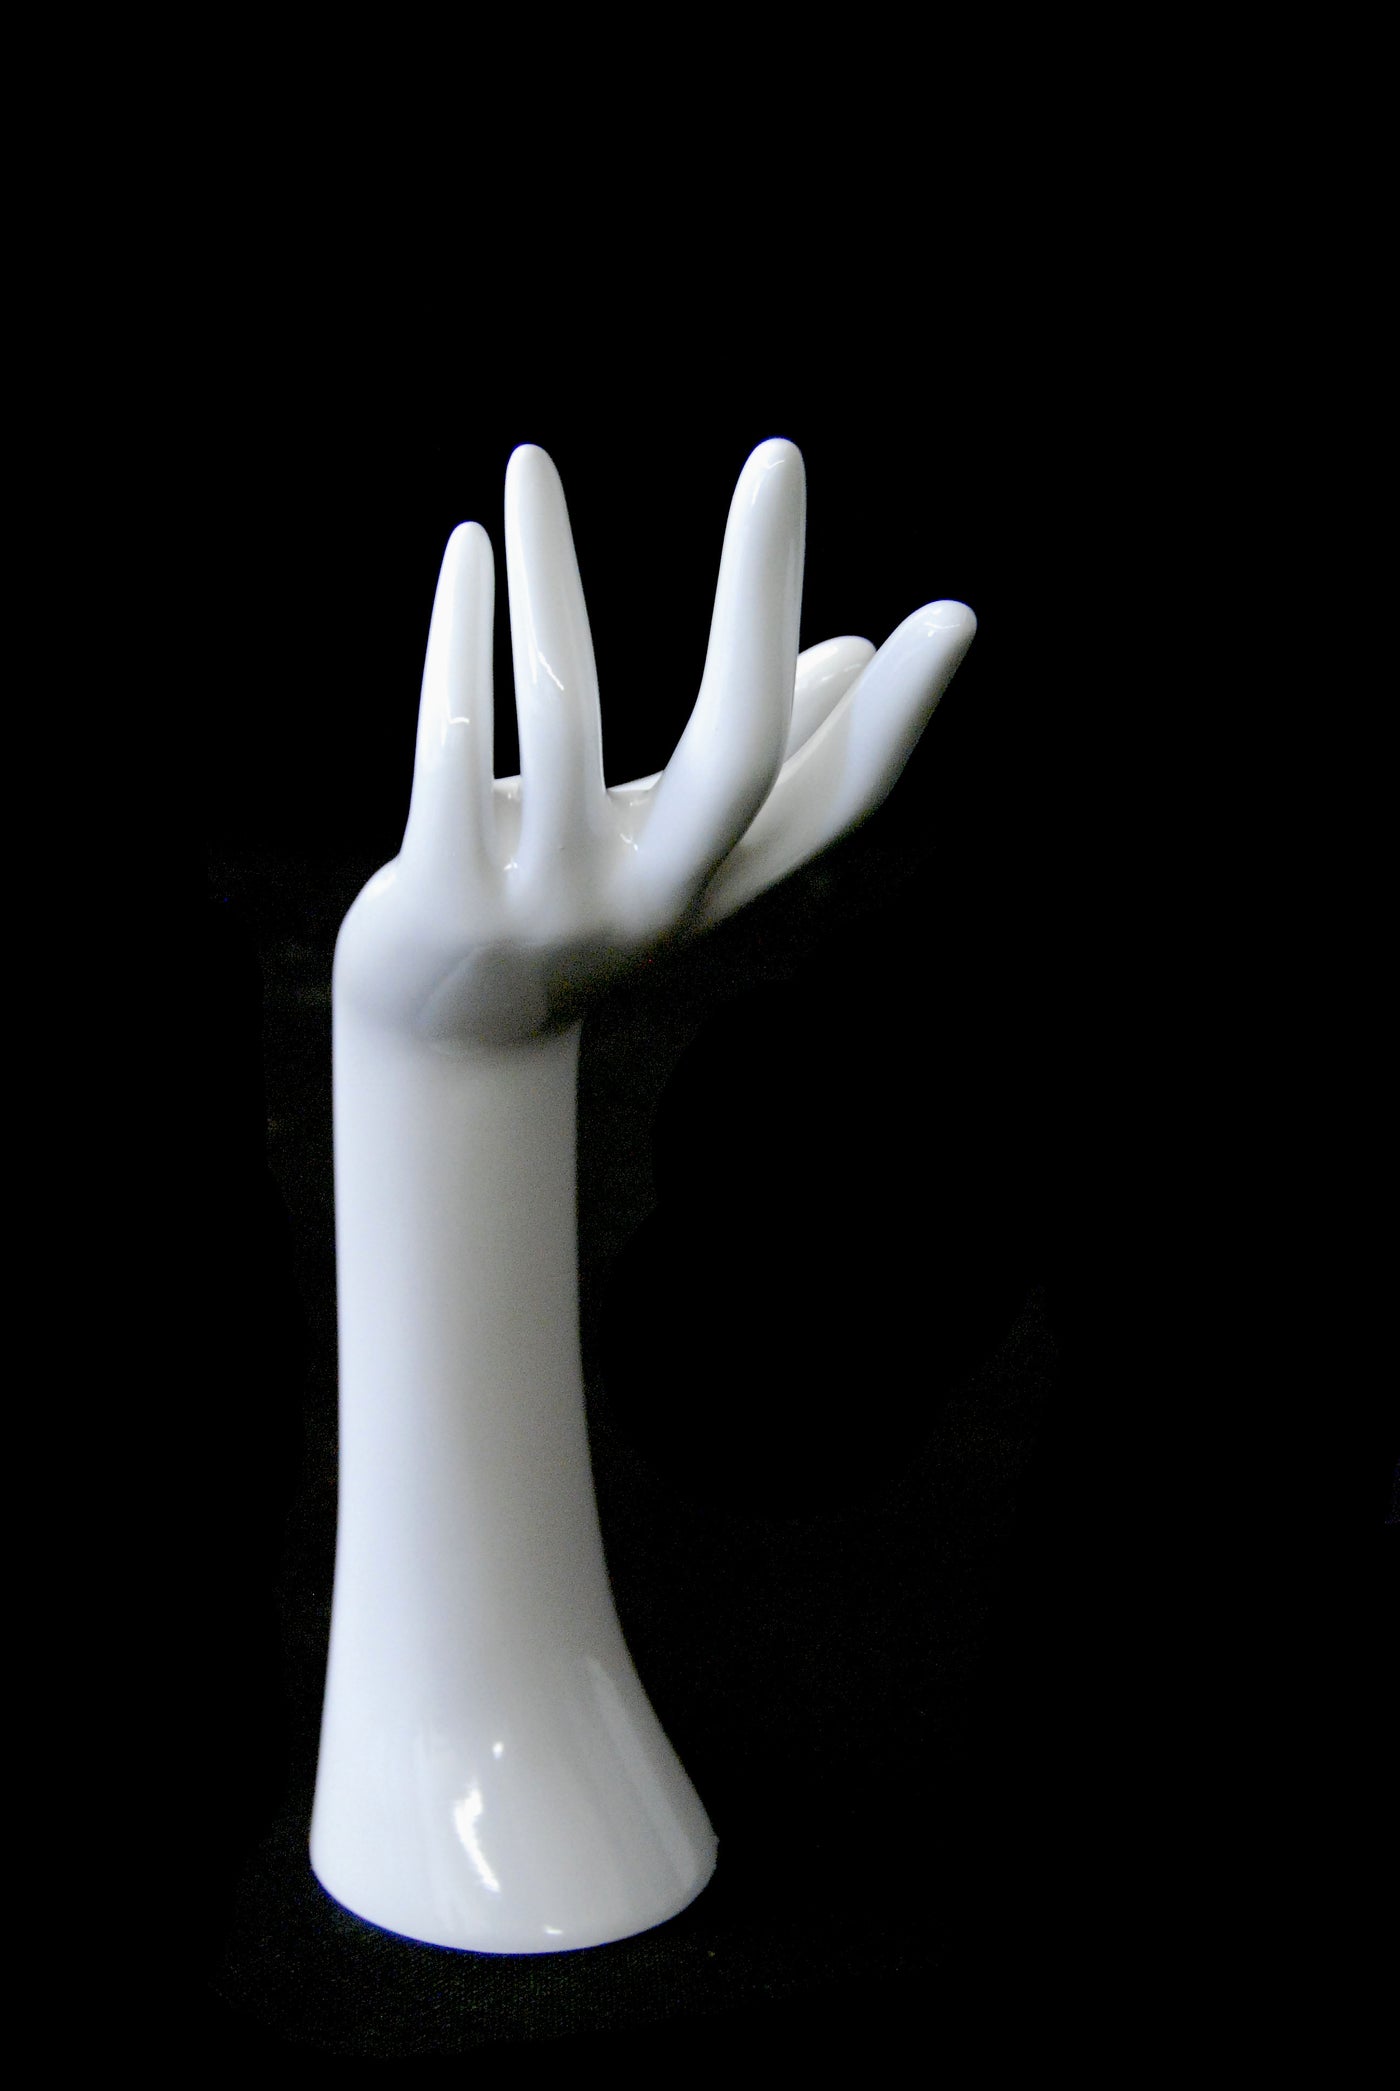 Jewelry Display Hand 1: Glossy White